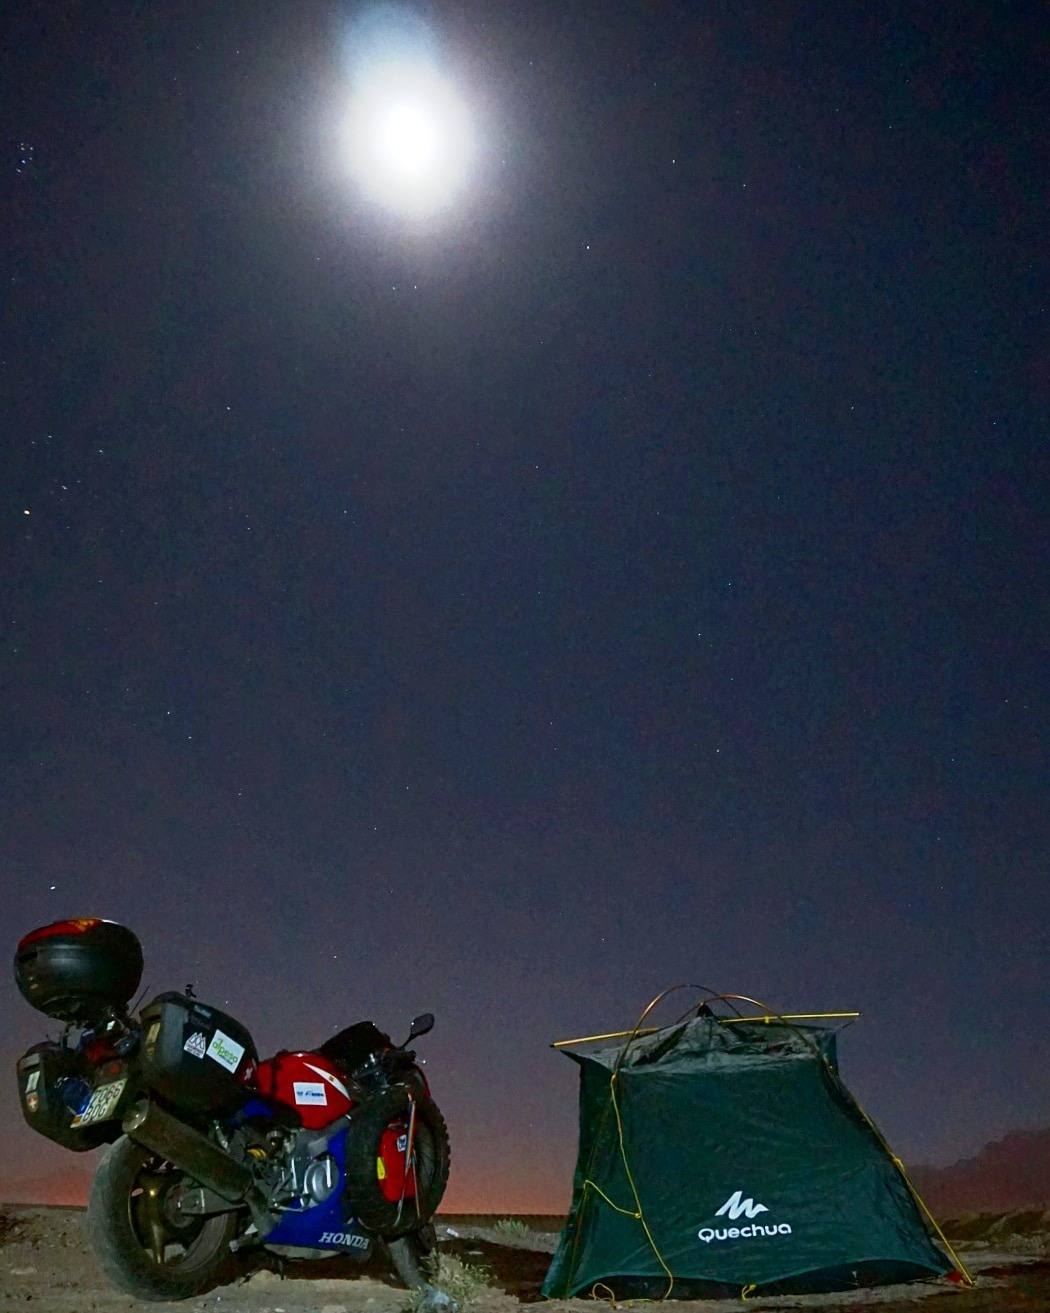 Fotos: La vuelta al mundo en moto, por etapas, de Sergio Martín